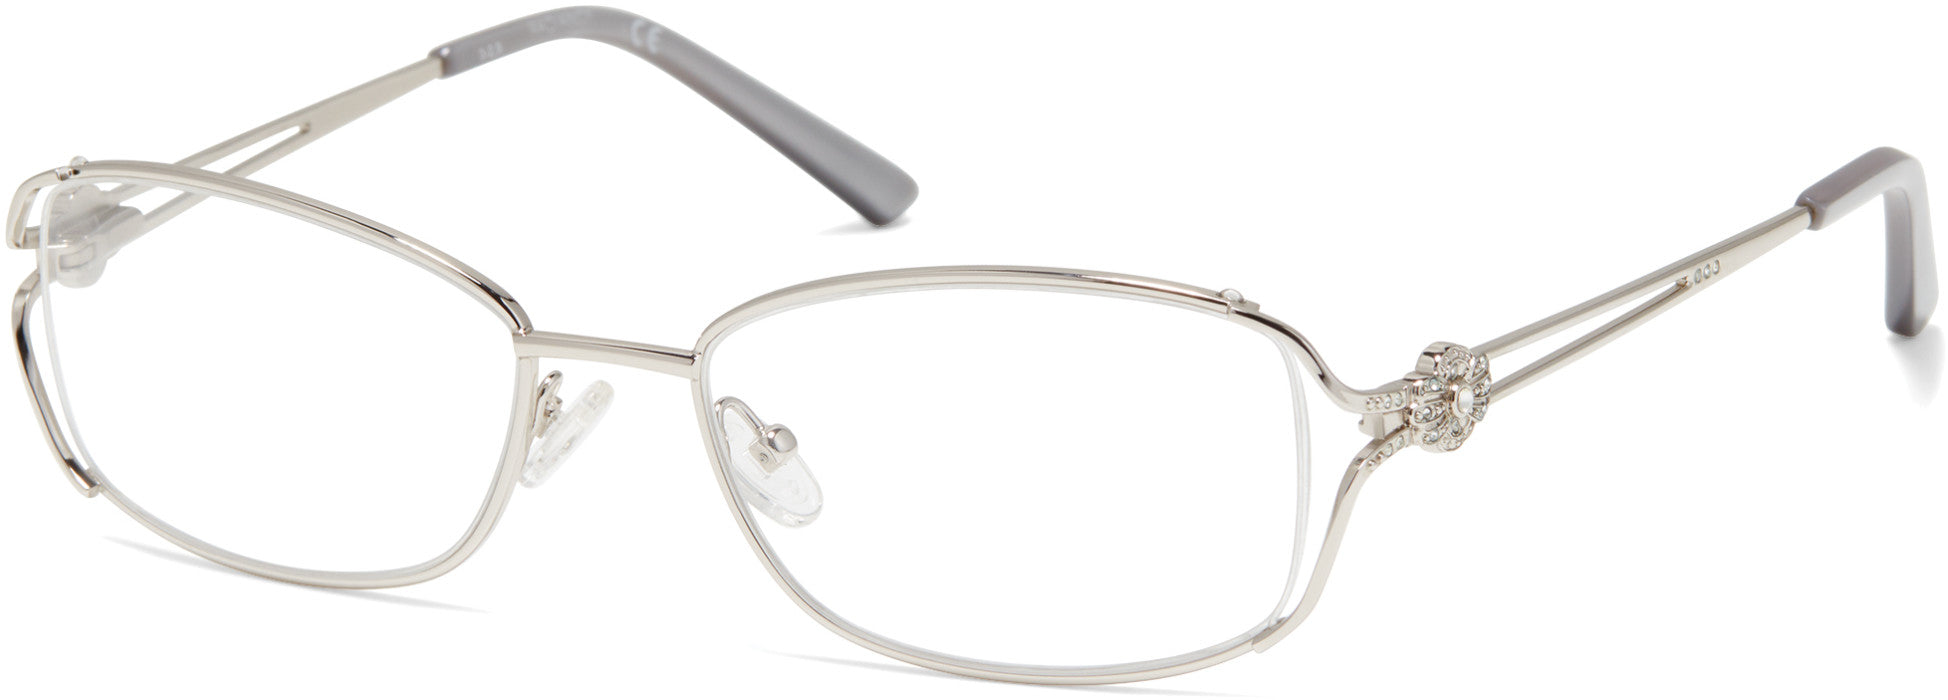 Viva VV8008 Oval Eyeglasses 010-010 - Shiny Light Nickeltin